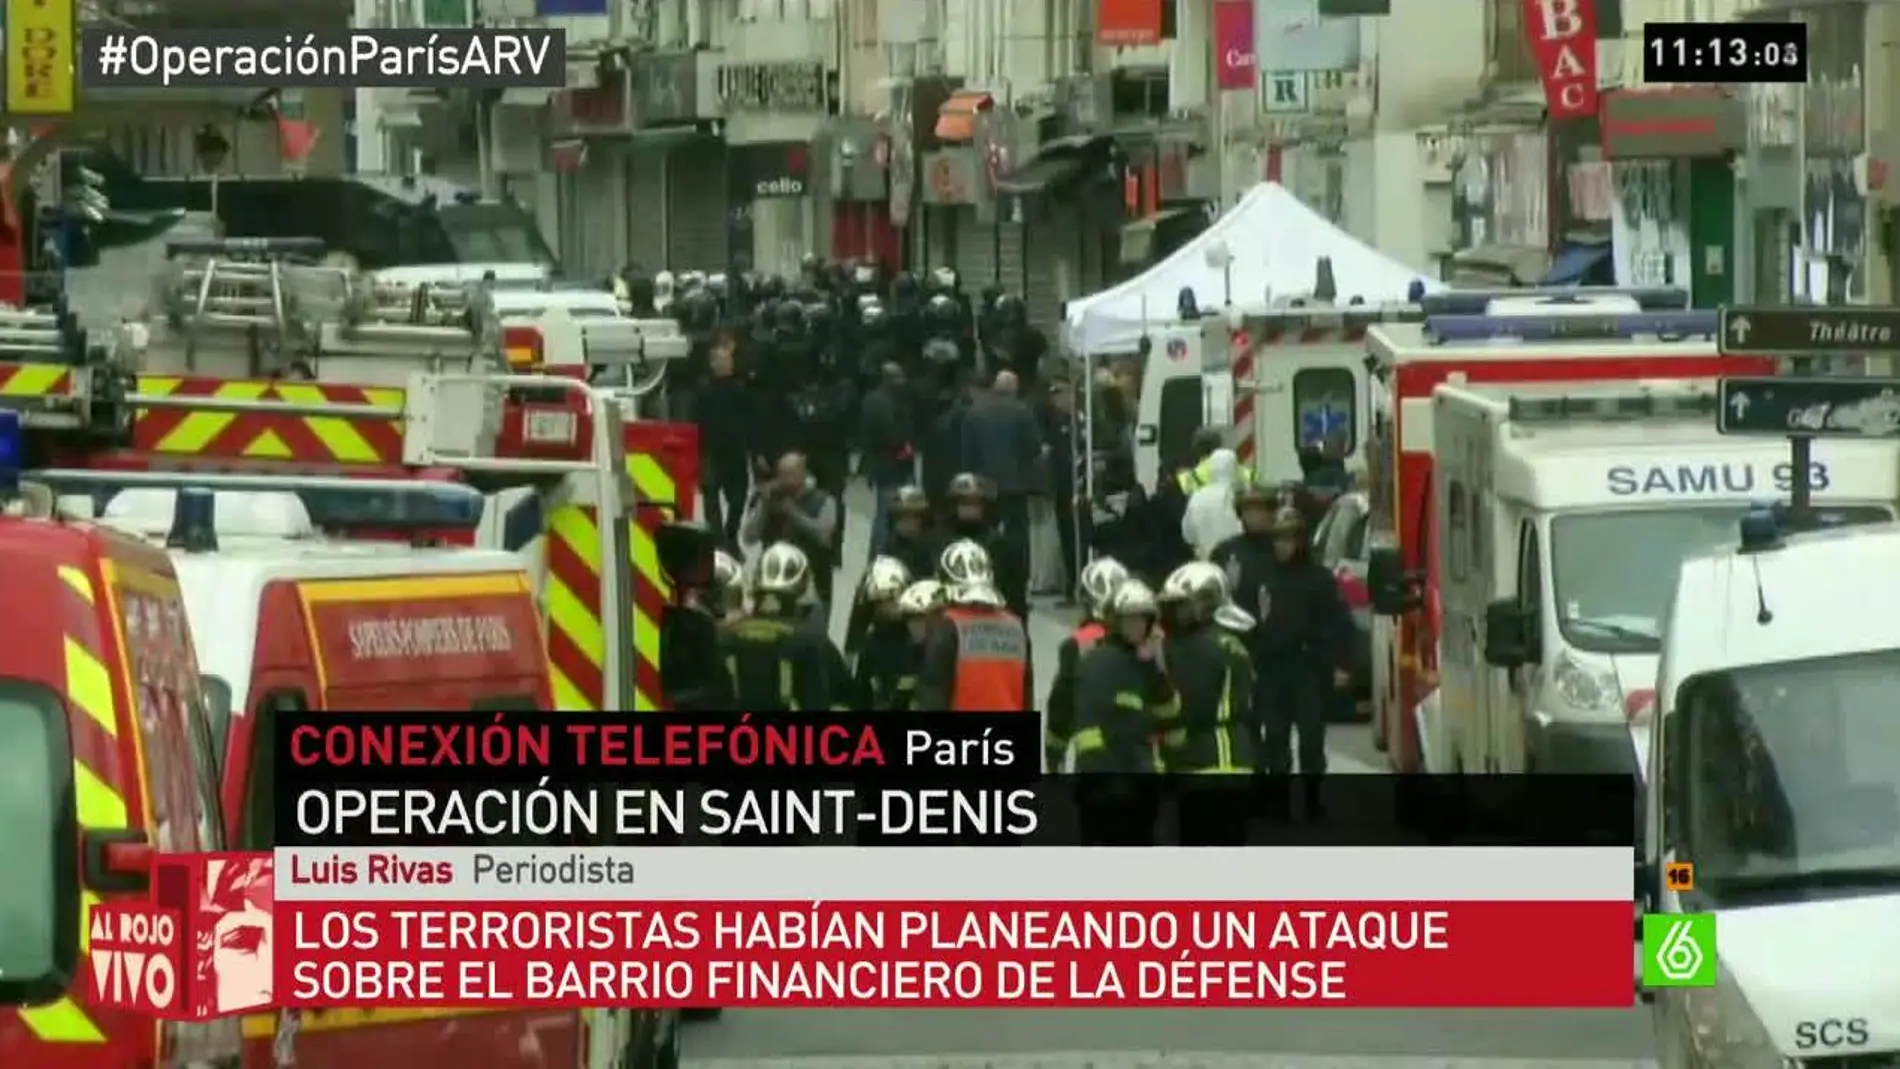 Imagen de la operación policial en París arv